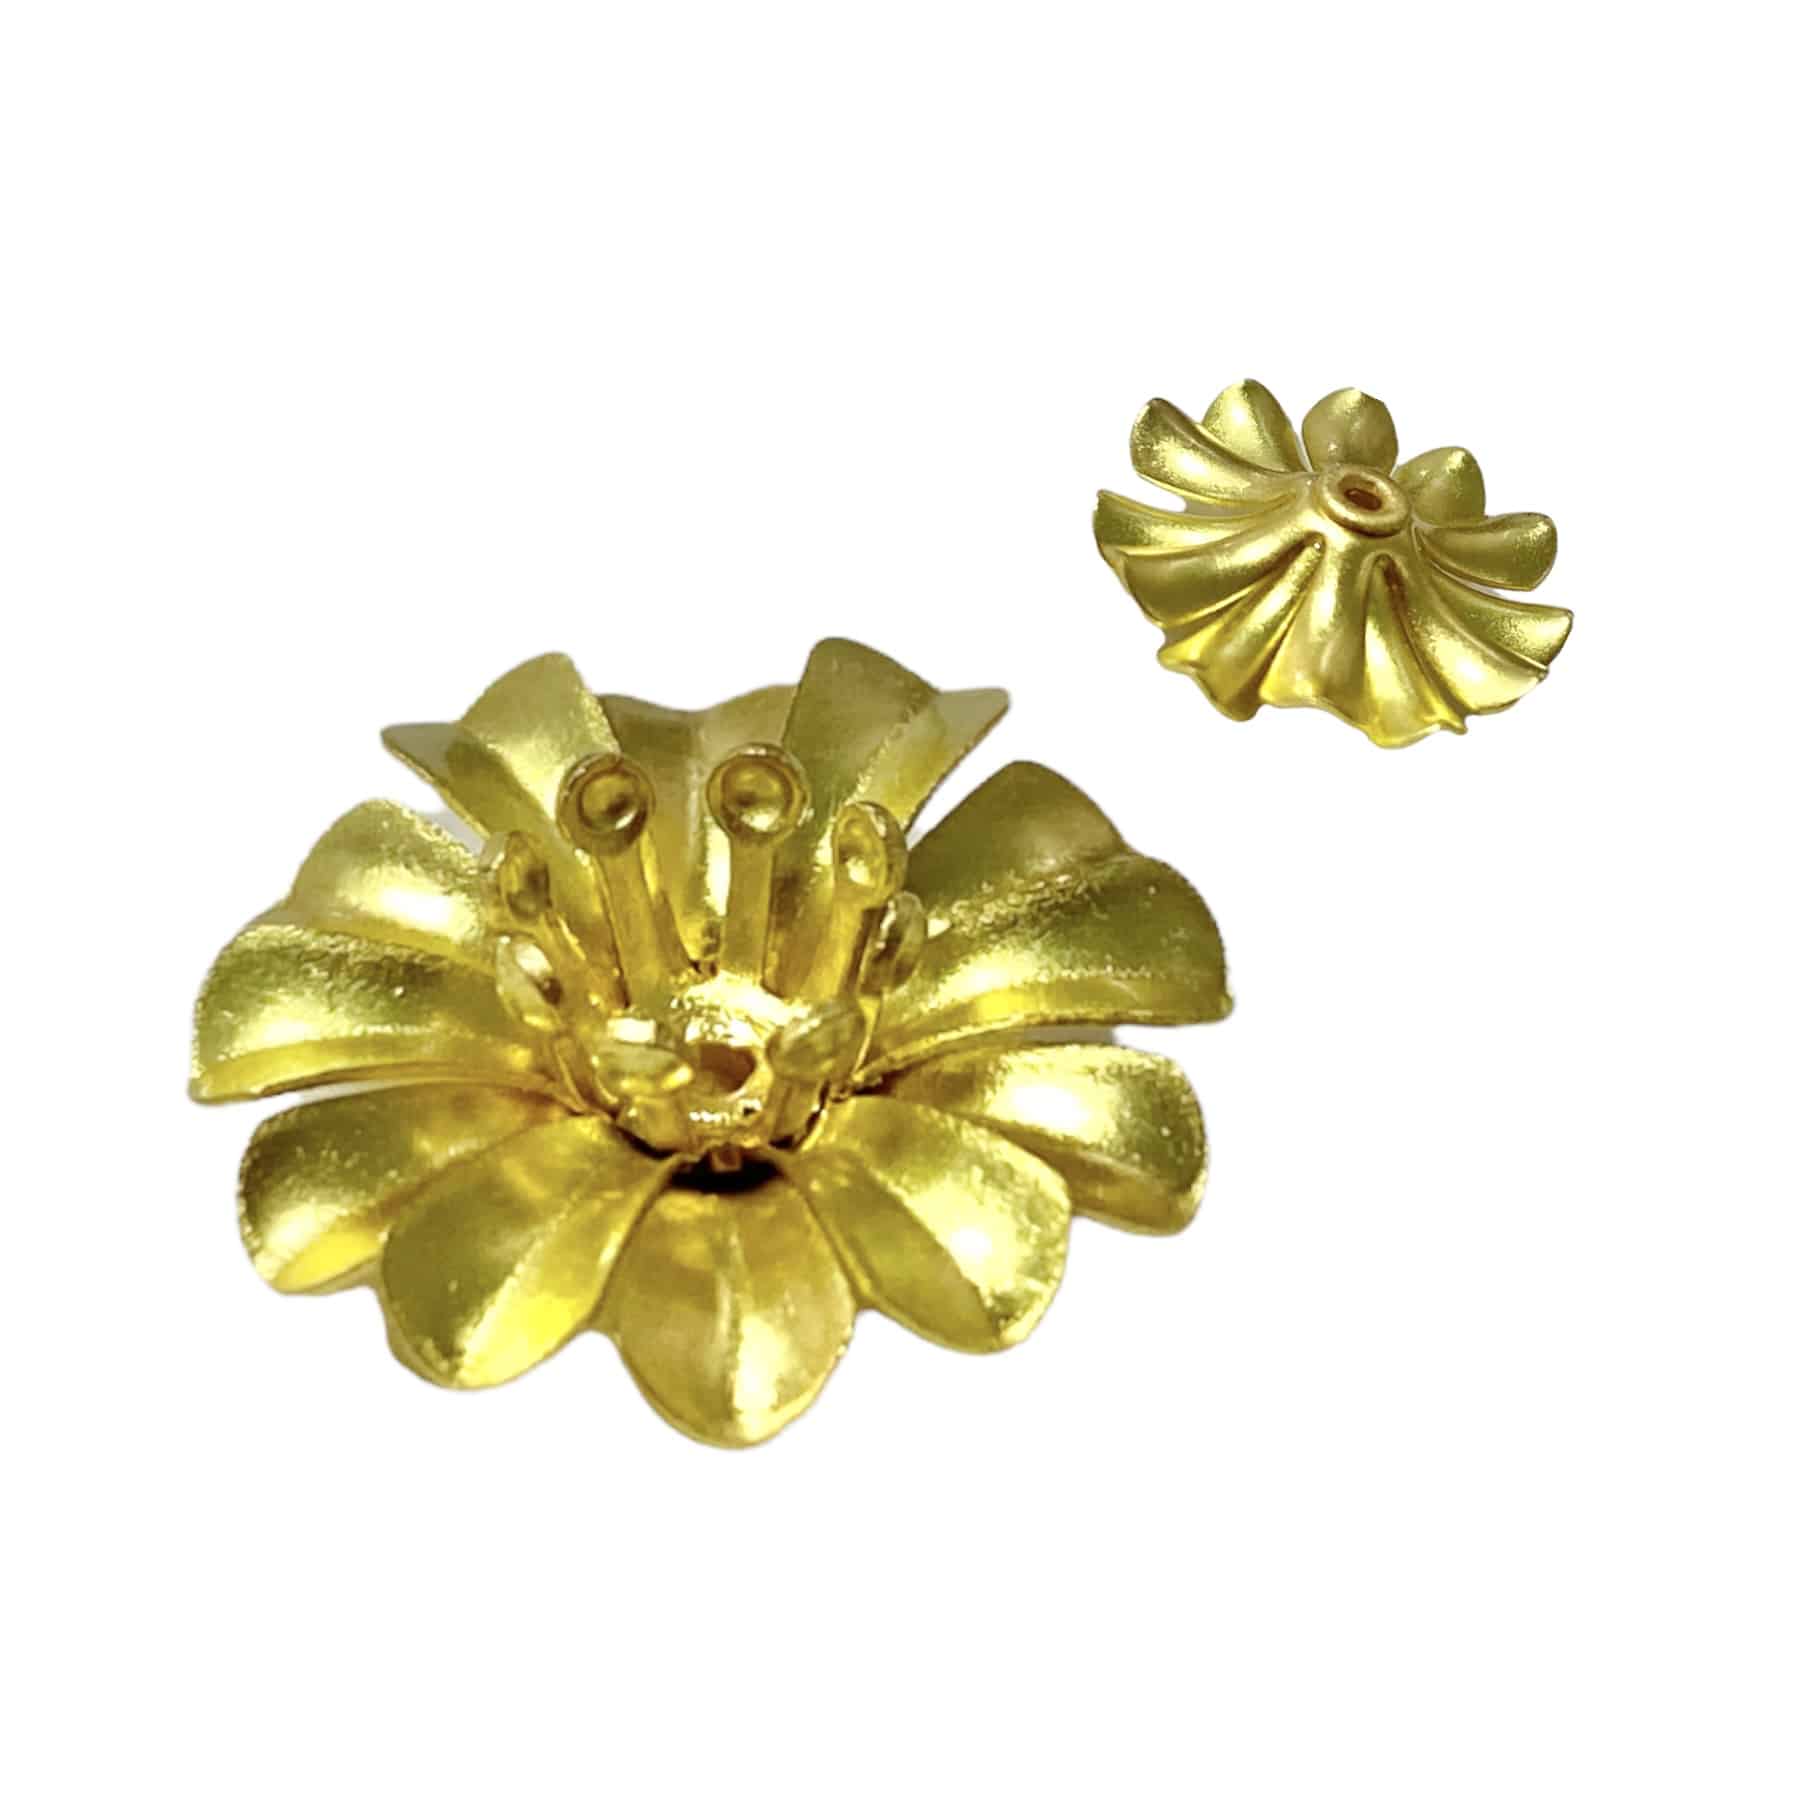 Gold flower base 15mm | Vindastore.com